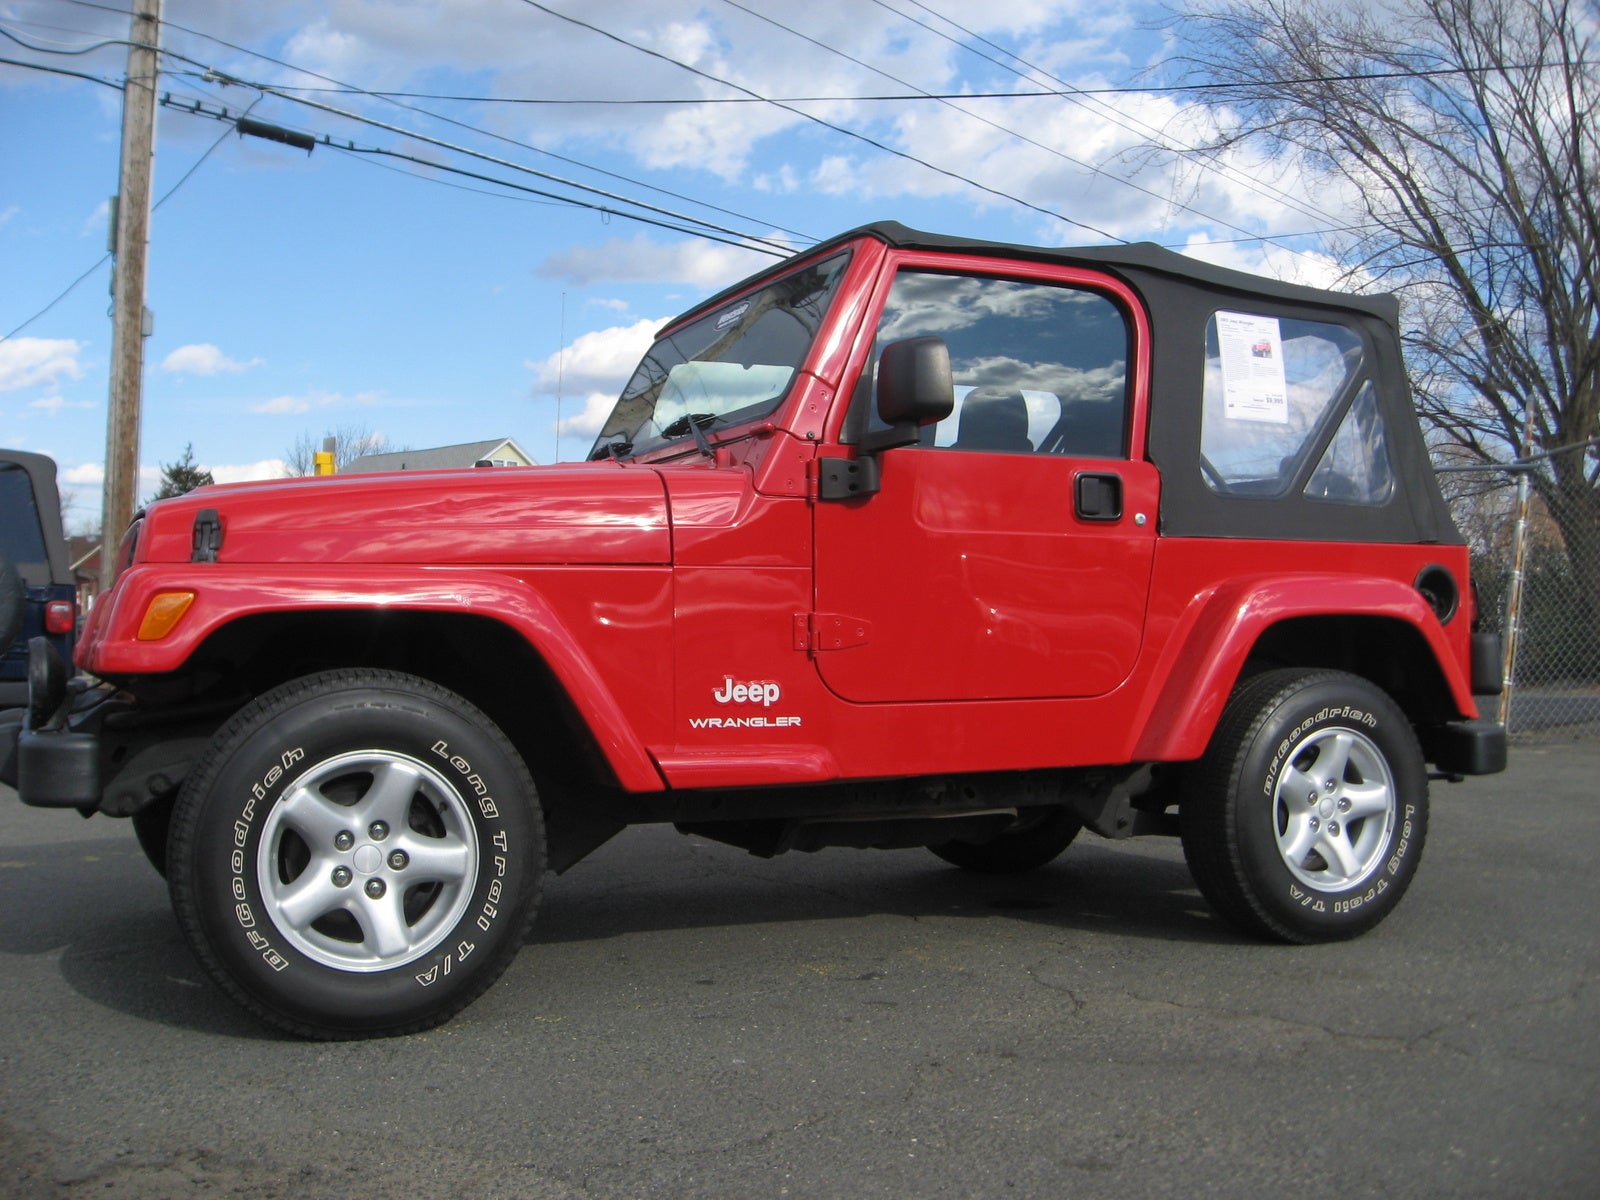 2003 Jeep wrangler sahara review